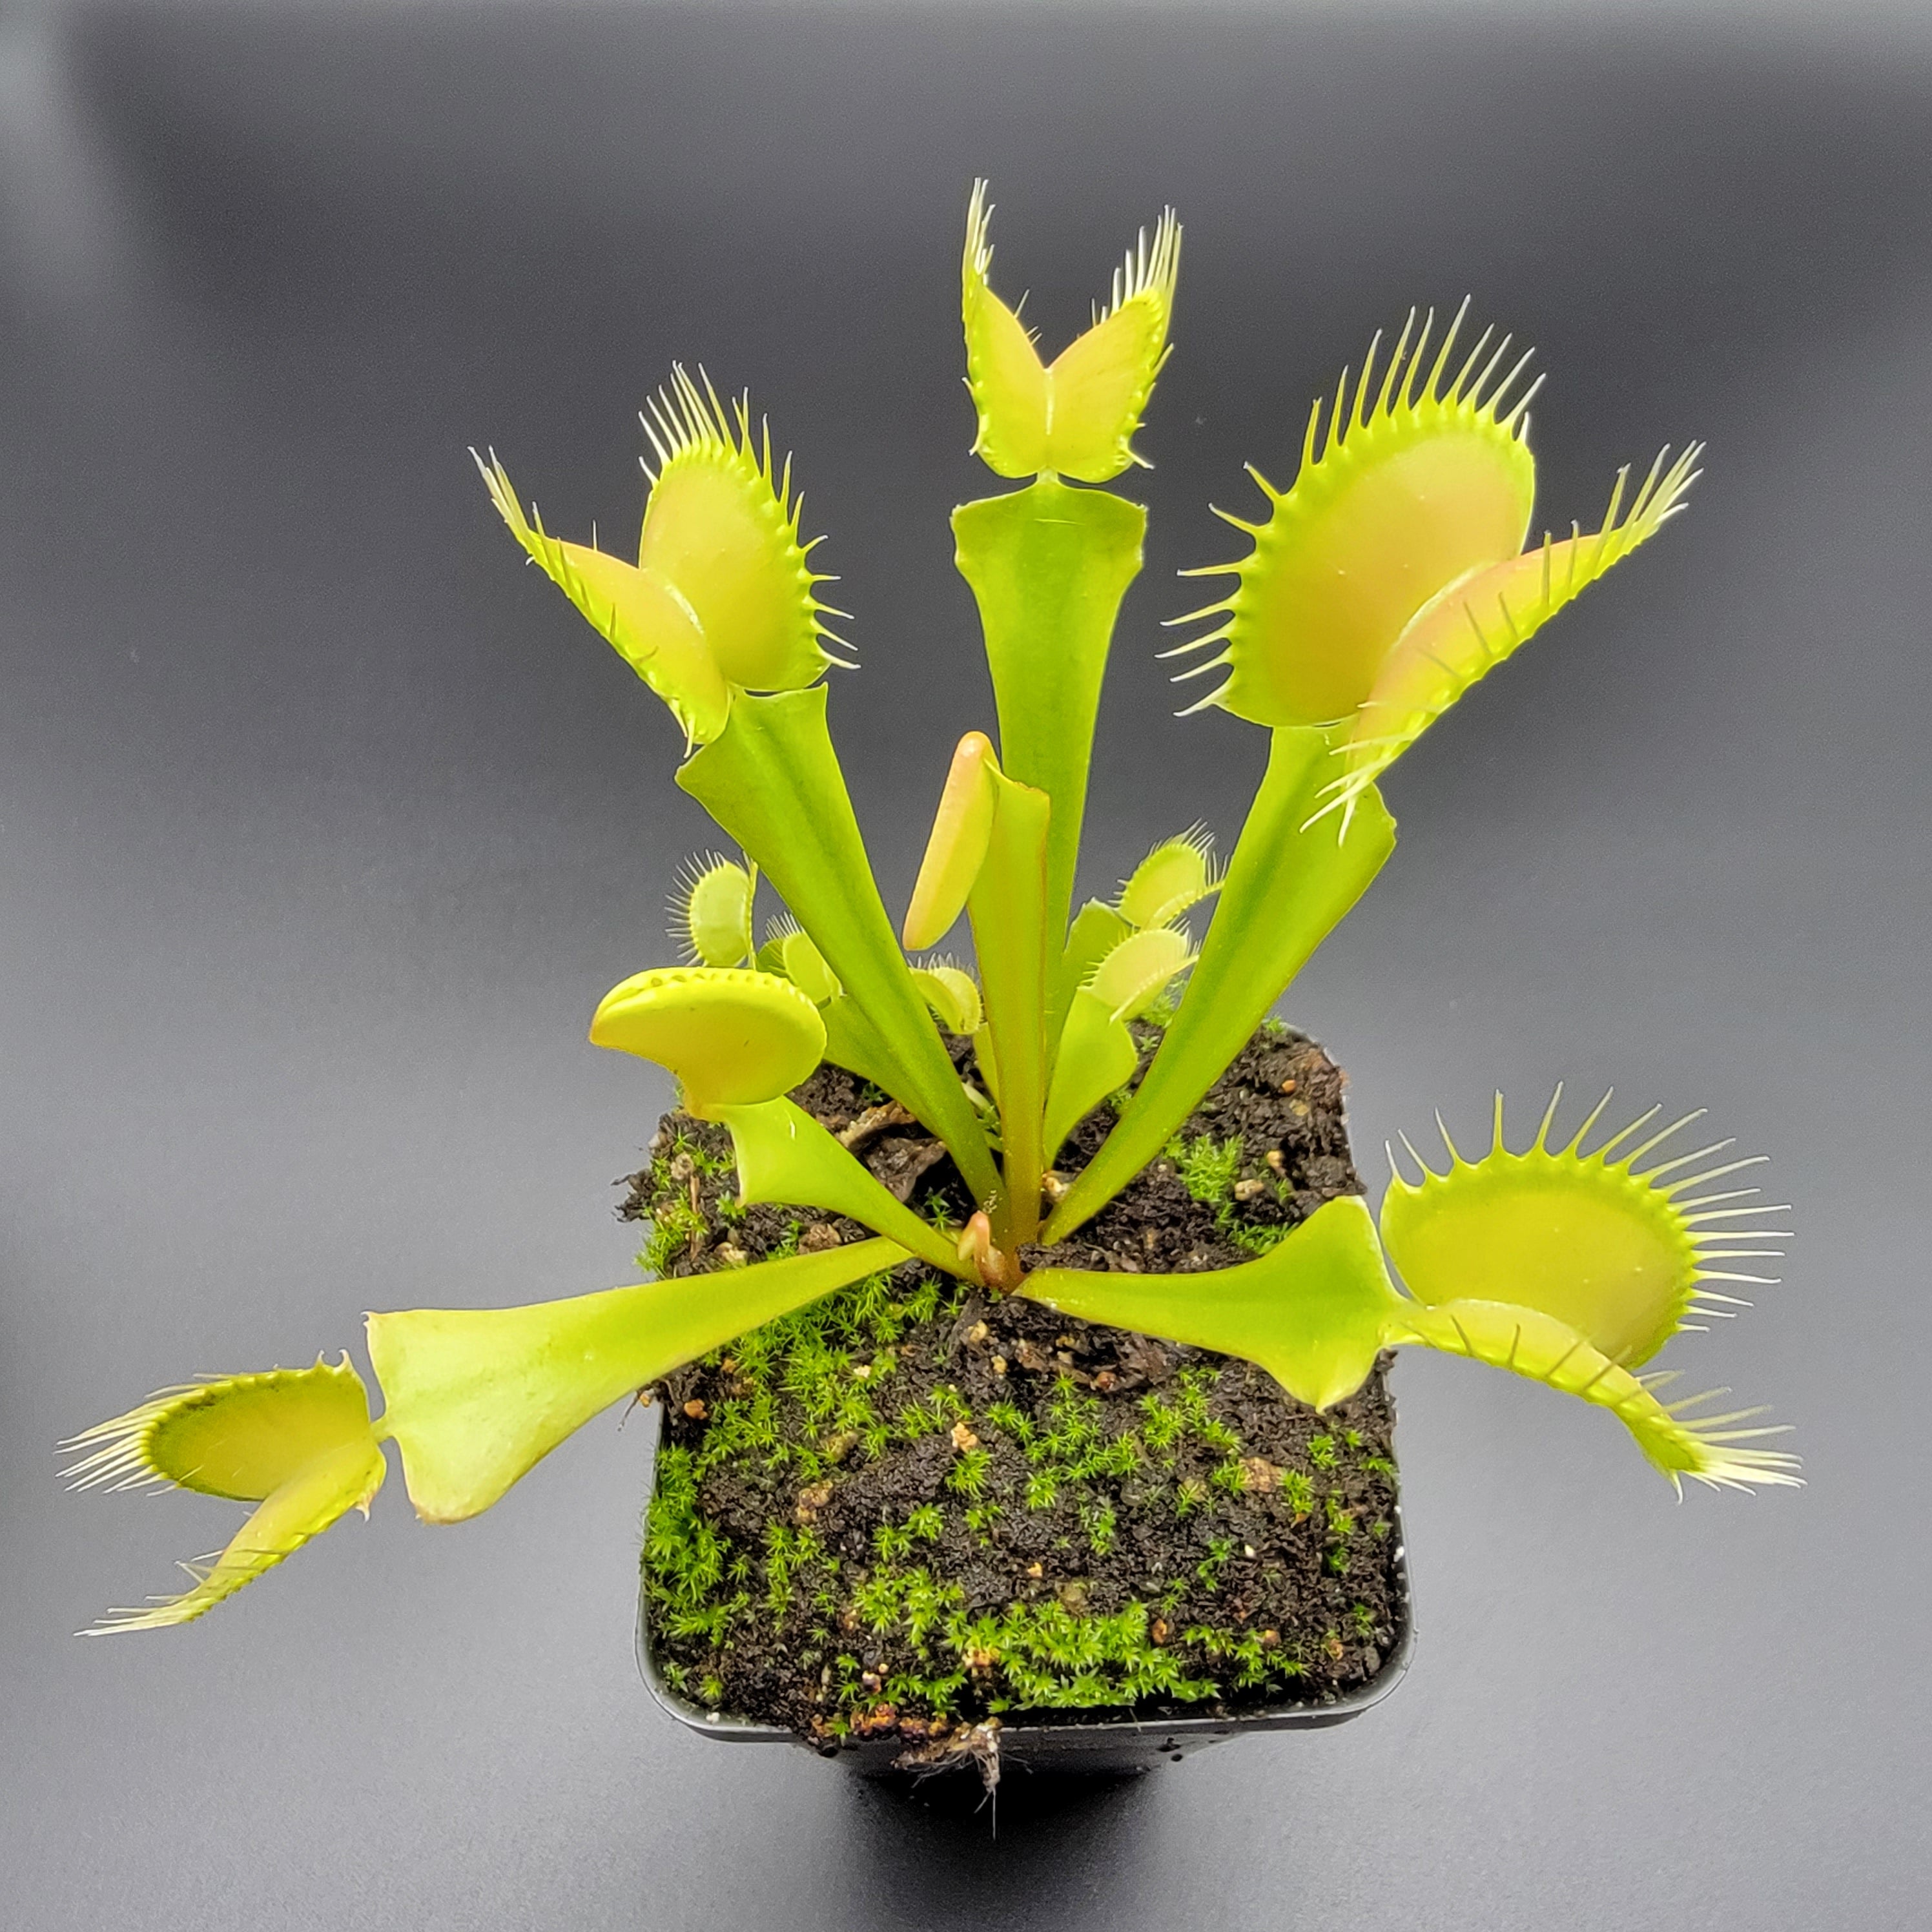 Venus flytrap (Dionaea muscipula) 'Big Mouth' x 'B52